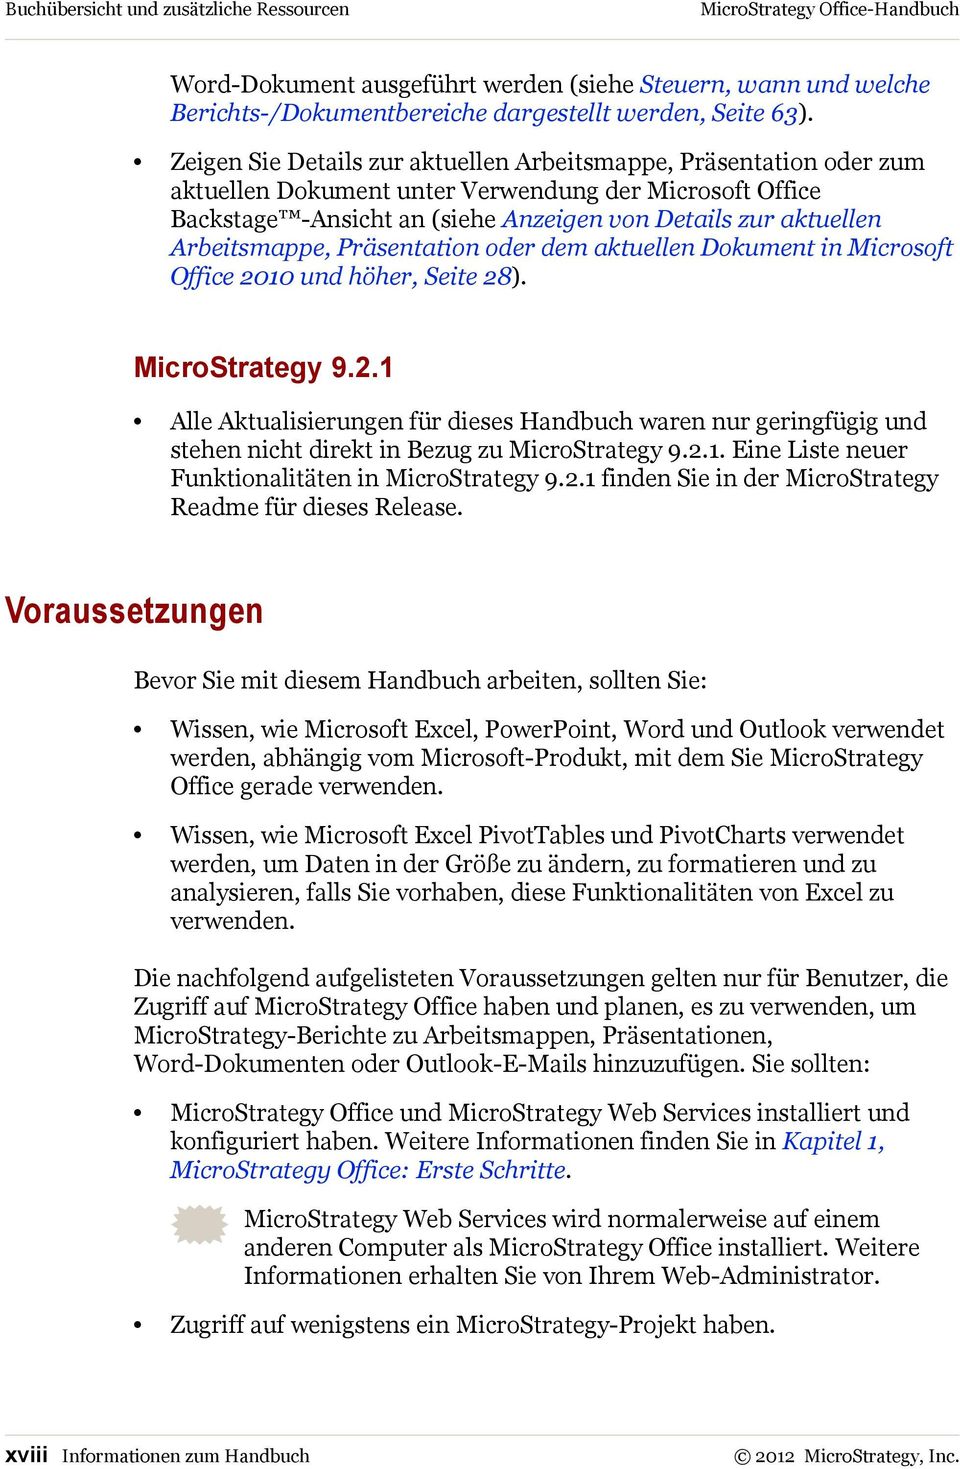 Arbeitsmappe, Präsentation oder dem aktuellen Dokument in Microsoft Office 2010 und höher, Seite 28). MicroStrategy 9.2.1 Alle Aktualisierungen für dieses Handbuch waren nur geringfügig und stehen nicht direkt in Bezug zu MicroStrategy 9.